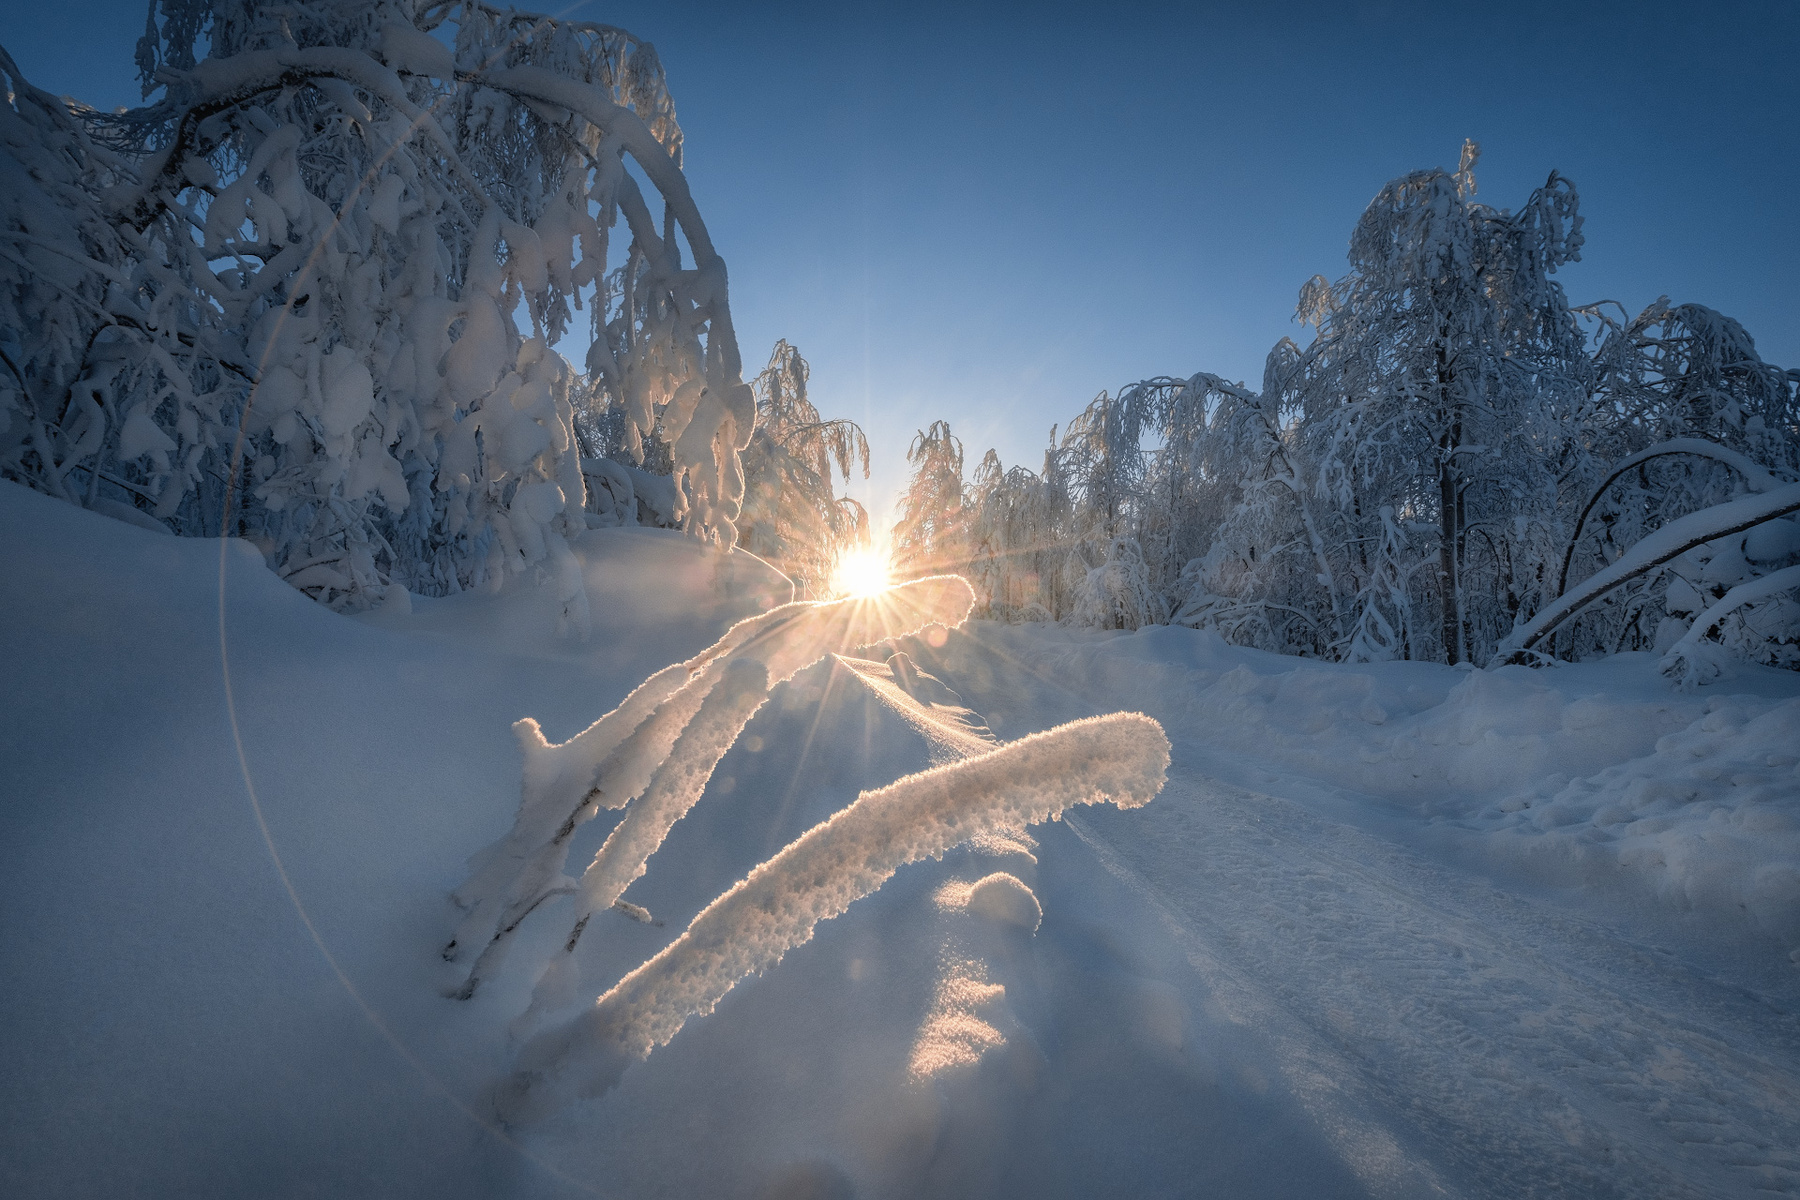 Морозная игра света зима мороз солнце свет деревья лес утро дорога рождество губаха пермь